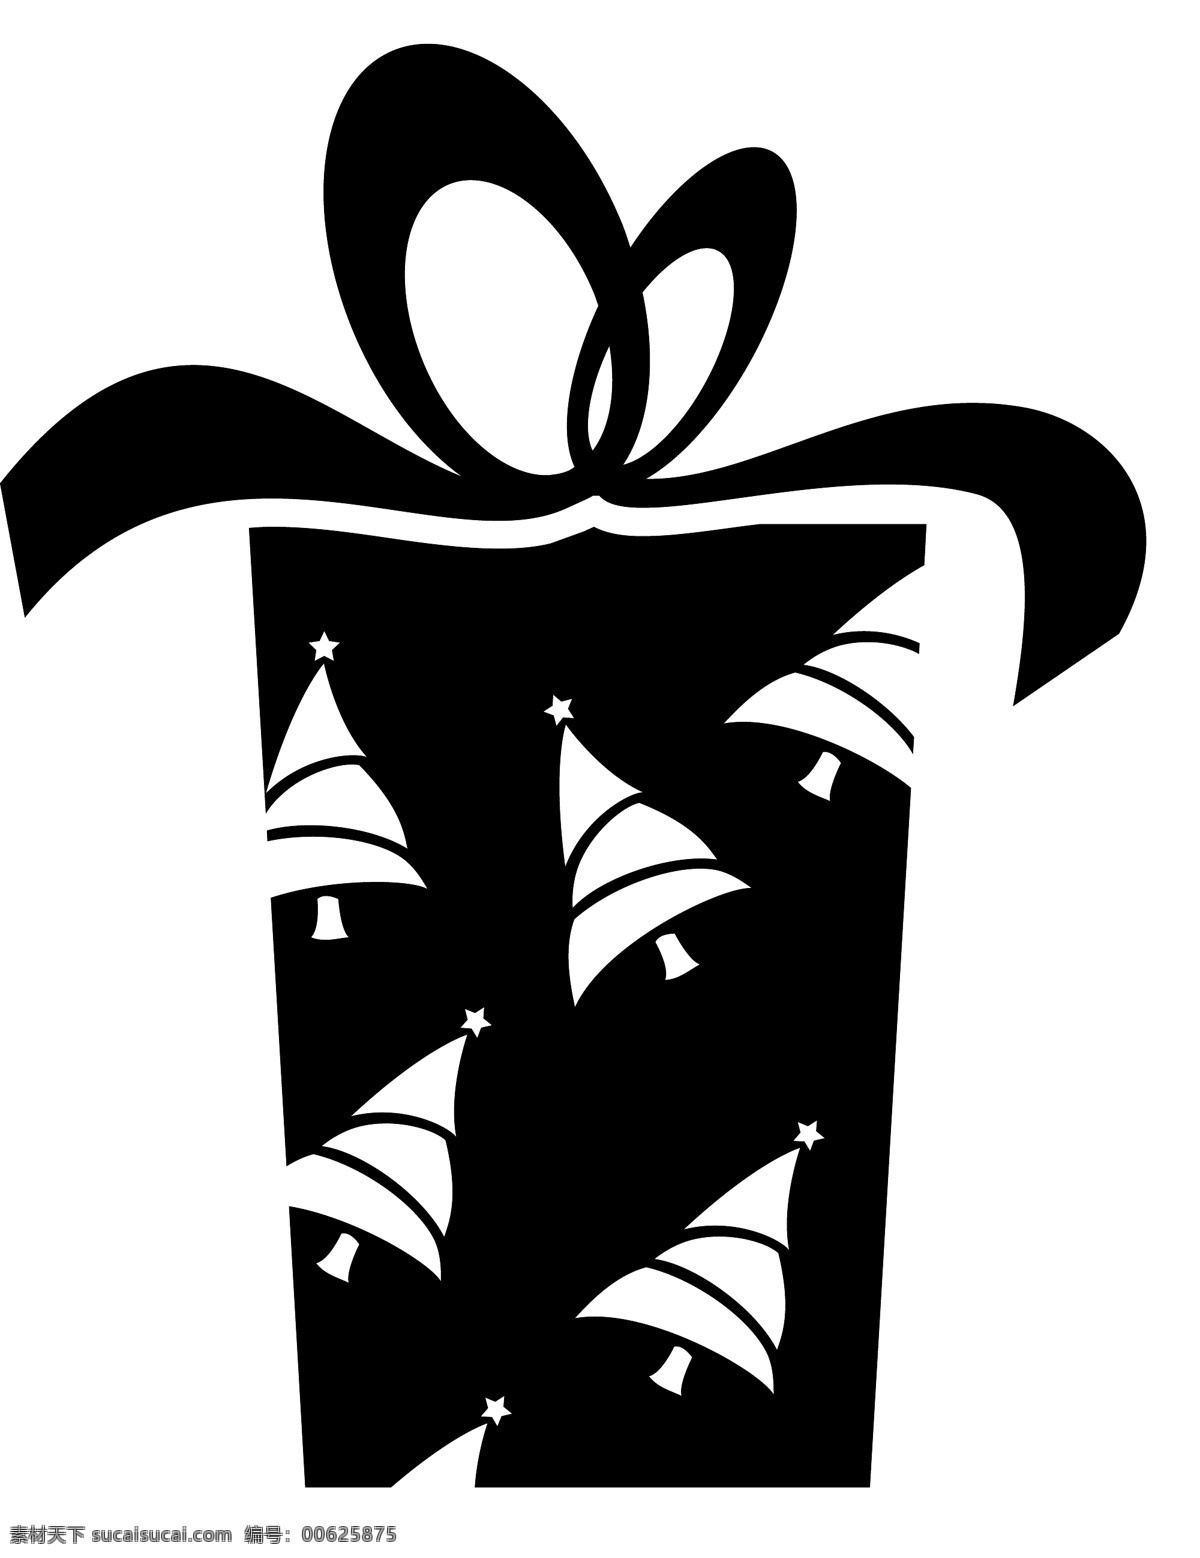 黑白 礼物 盒 icon 图标 线性 扁平 手绘 单色 多色 简约 精美 可爱 礼物盒 礼品 图标素材